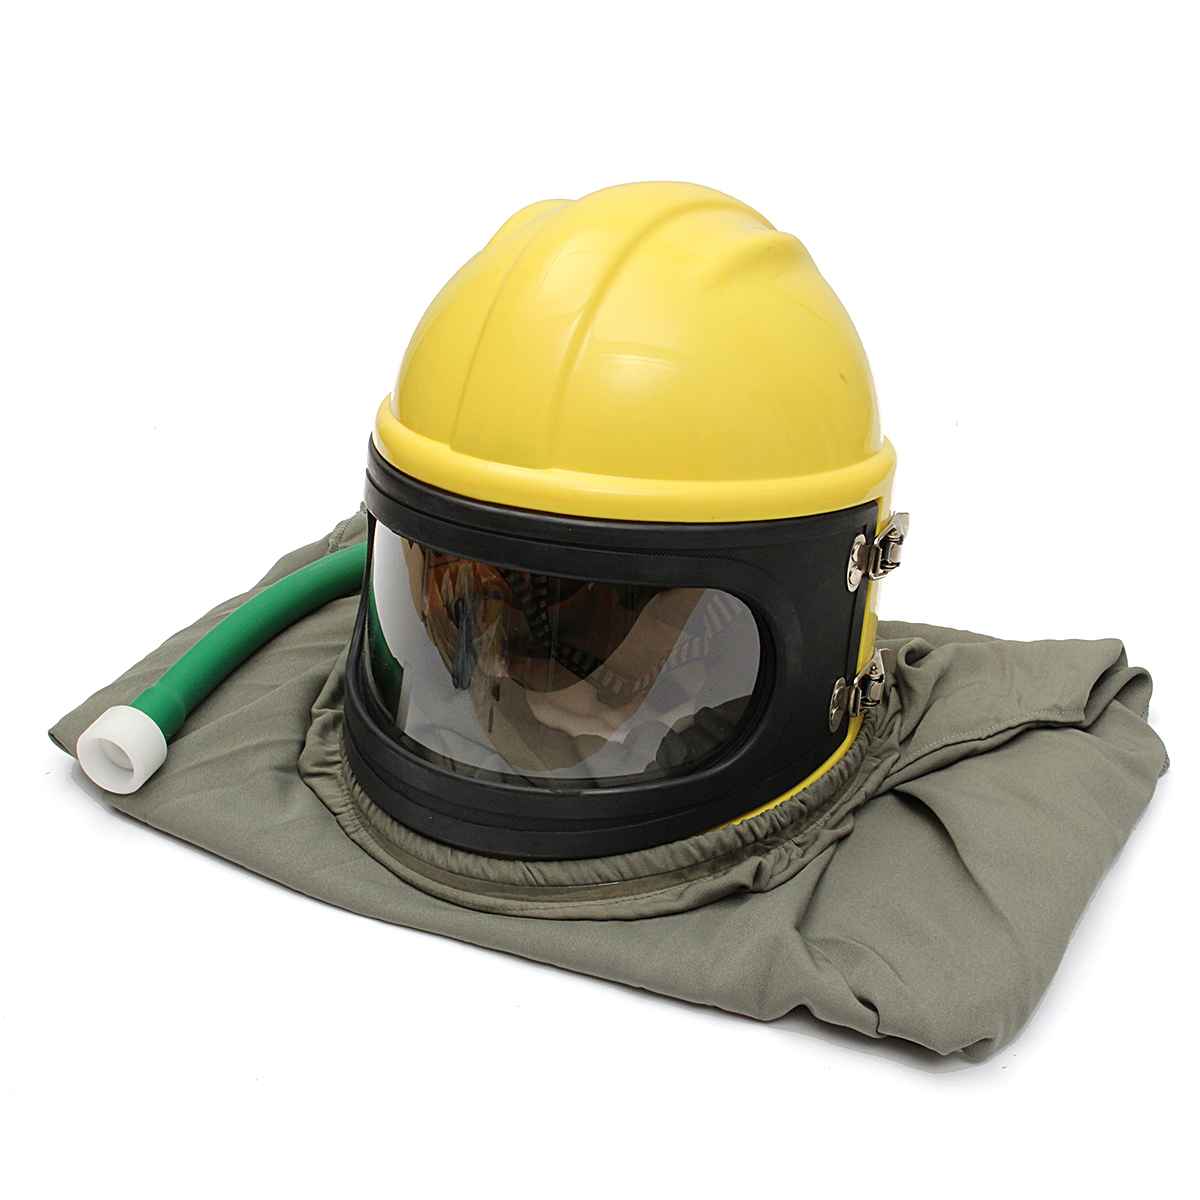 

Air FED Безопасность Пескоструйный шлем Защитный чехол для песочницы для пескоструйной обработки